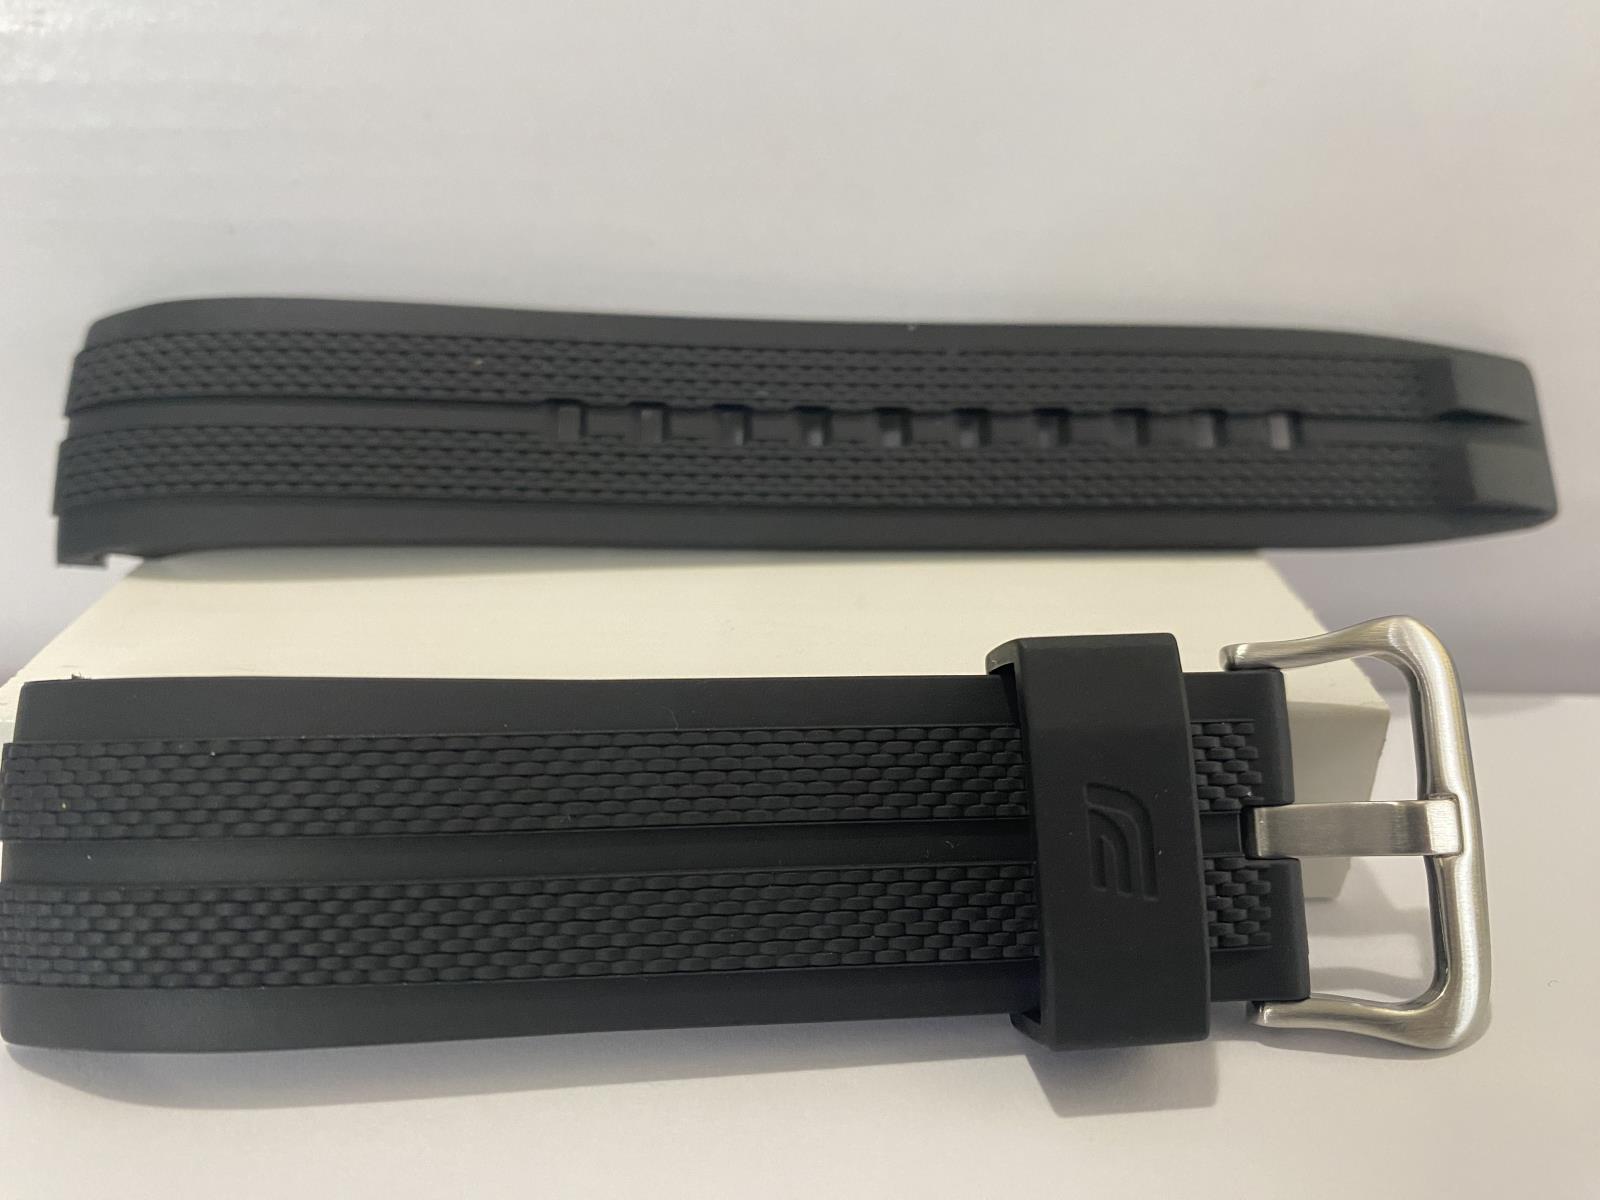 Casio Watchband EFR-557 Black Resin Strap. Original Casio Band w/pins